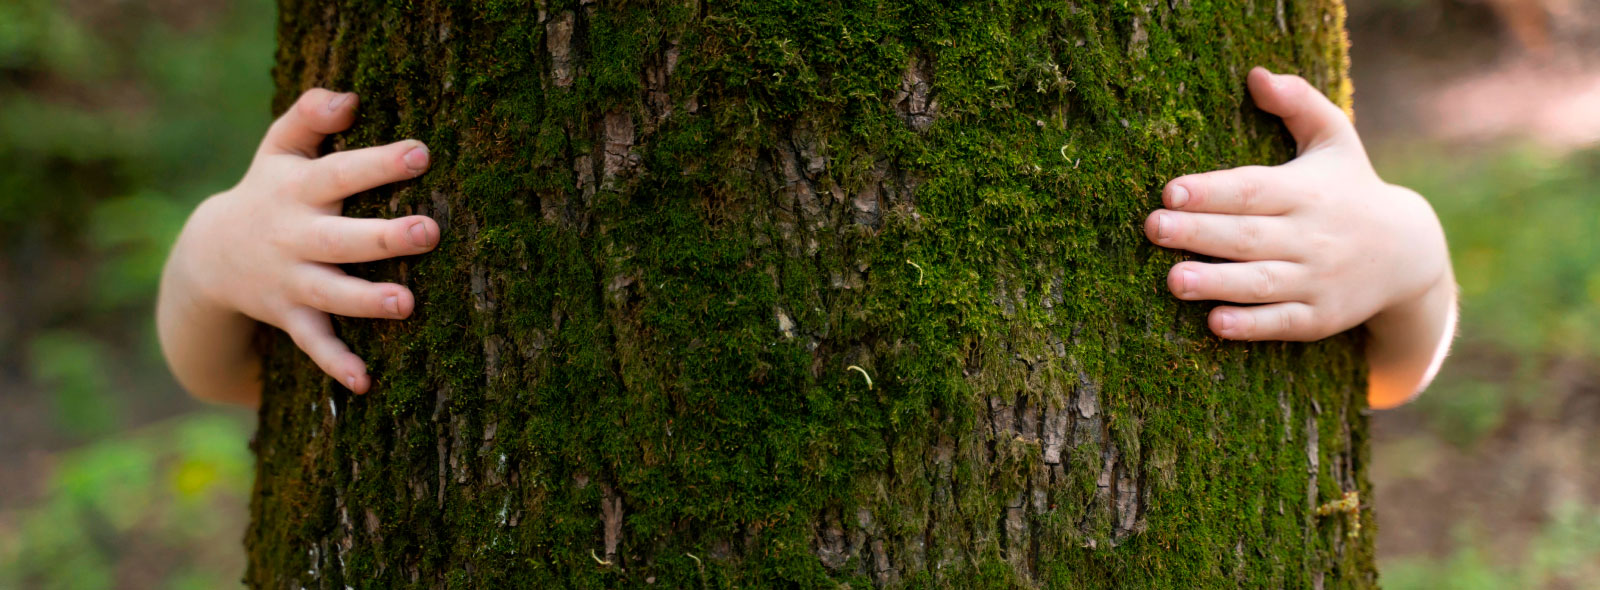 Sostenibilidad - Carglass: manos abrazando el tronco de un árbol verde